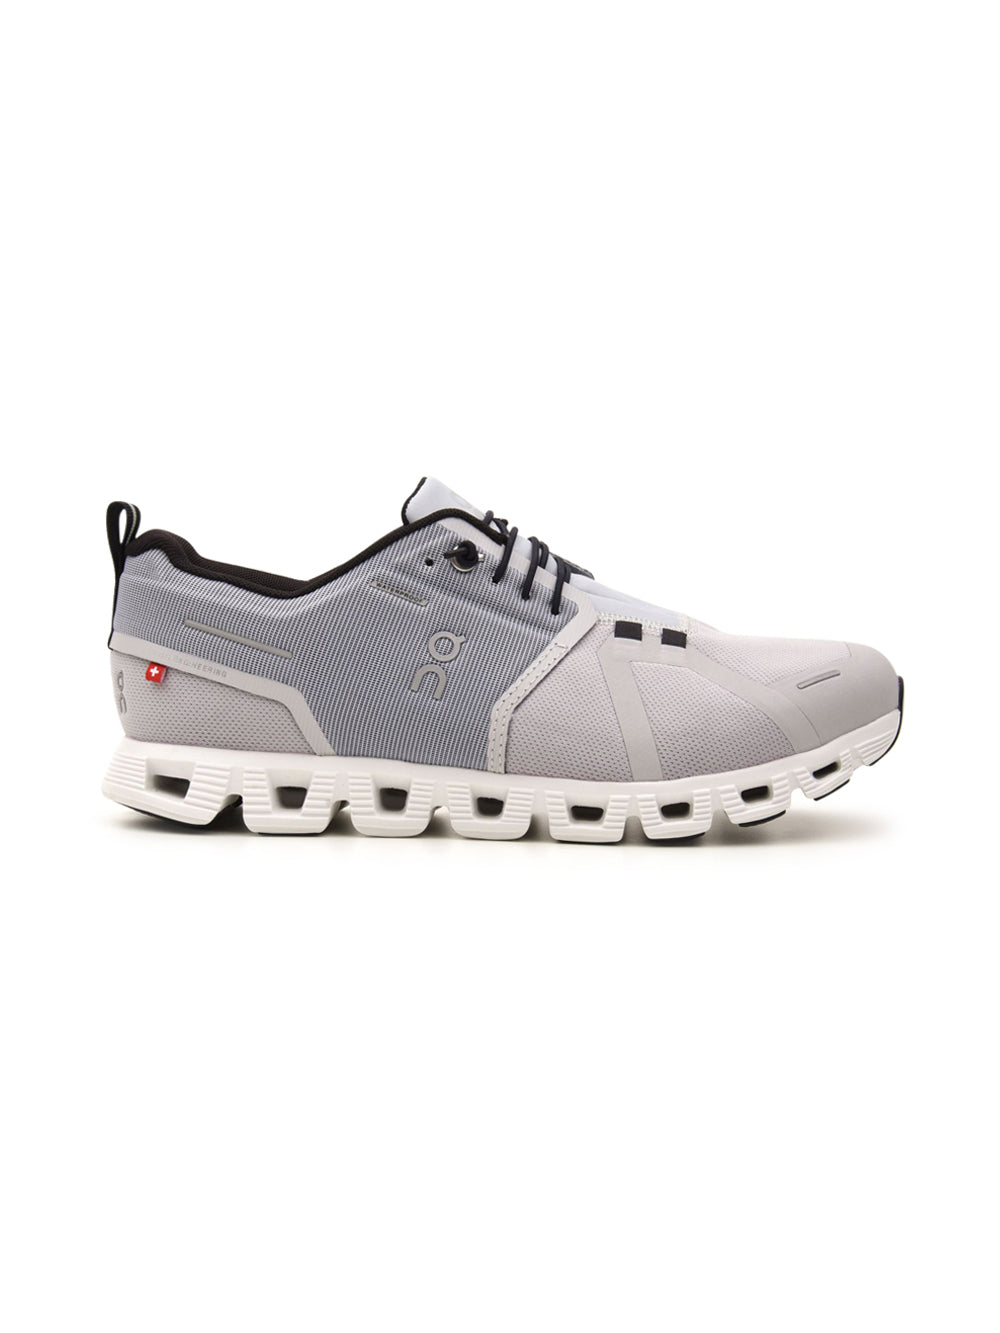 Sneakers Basse Uomo modello Cloud grigio, On